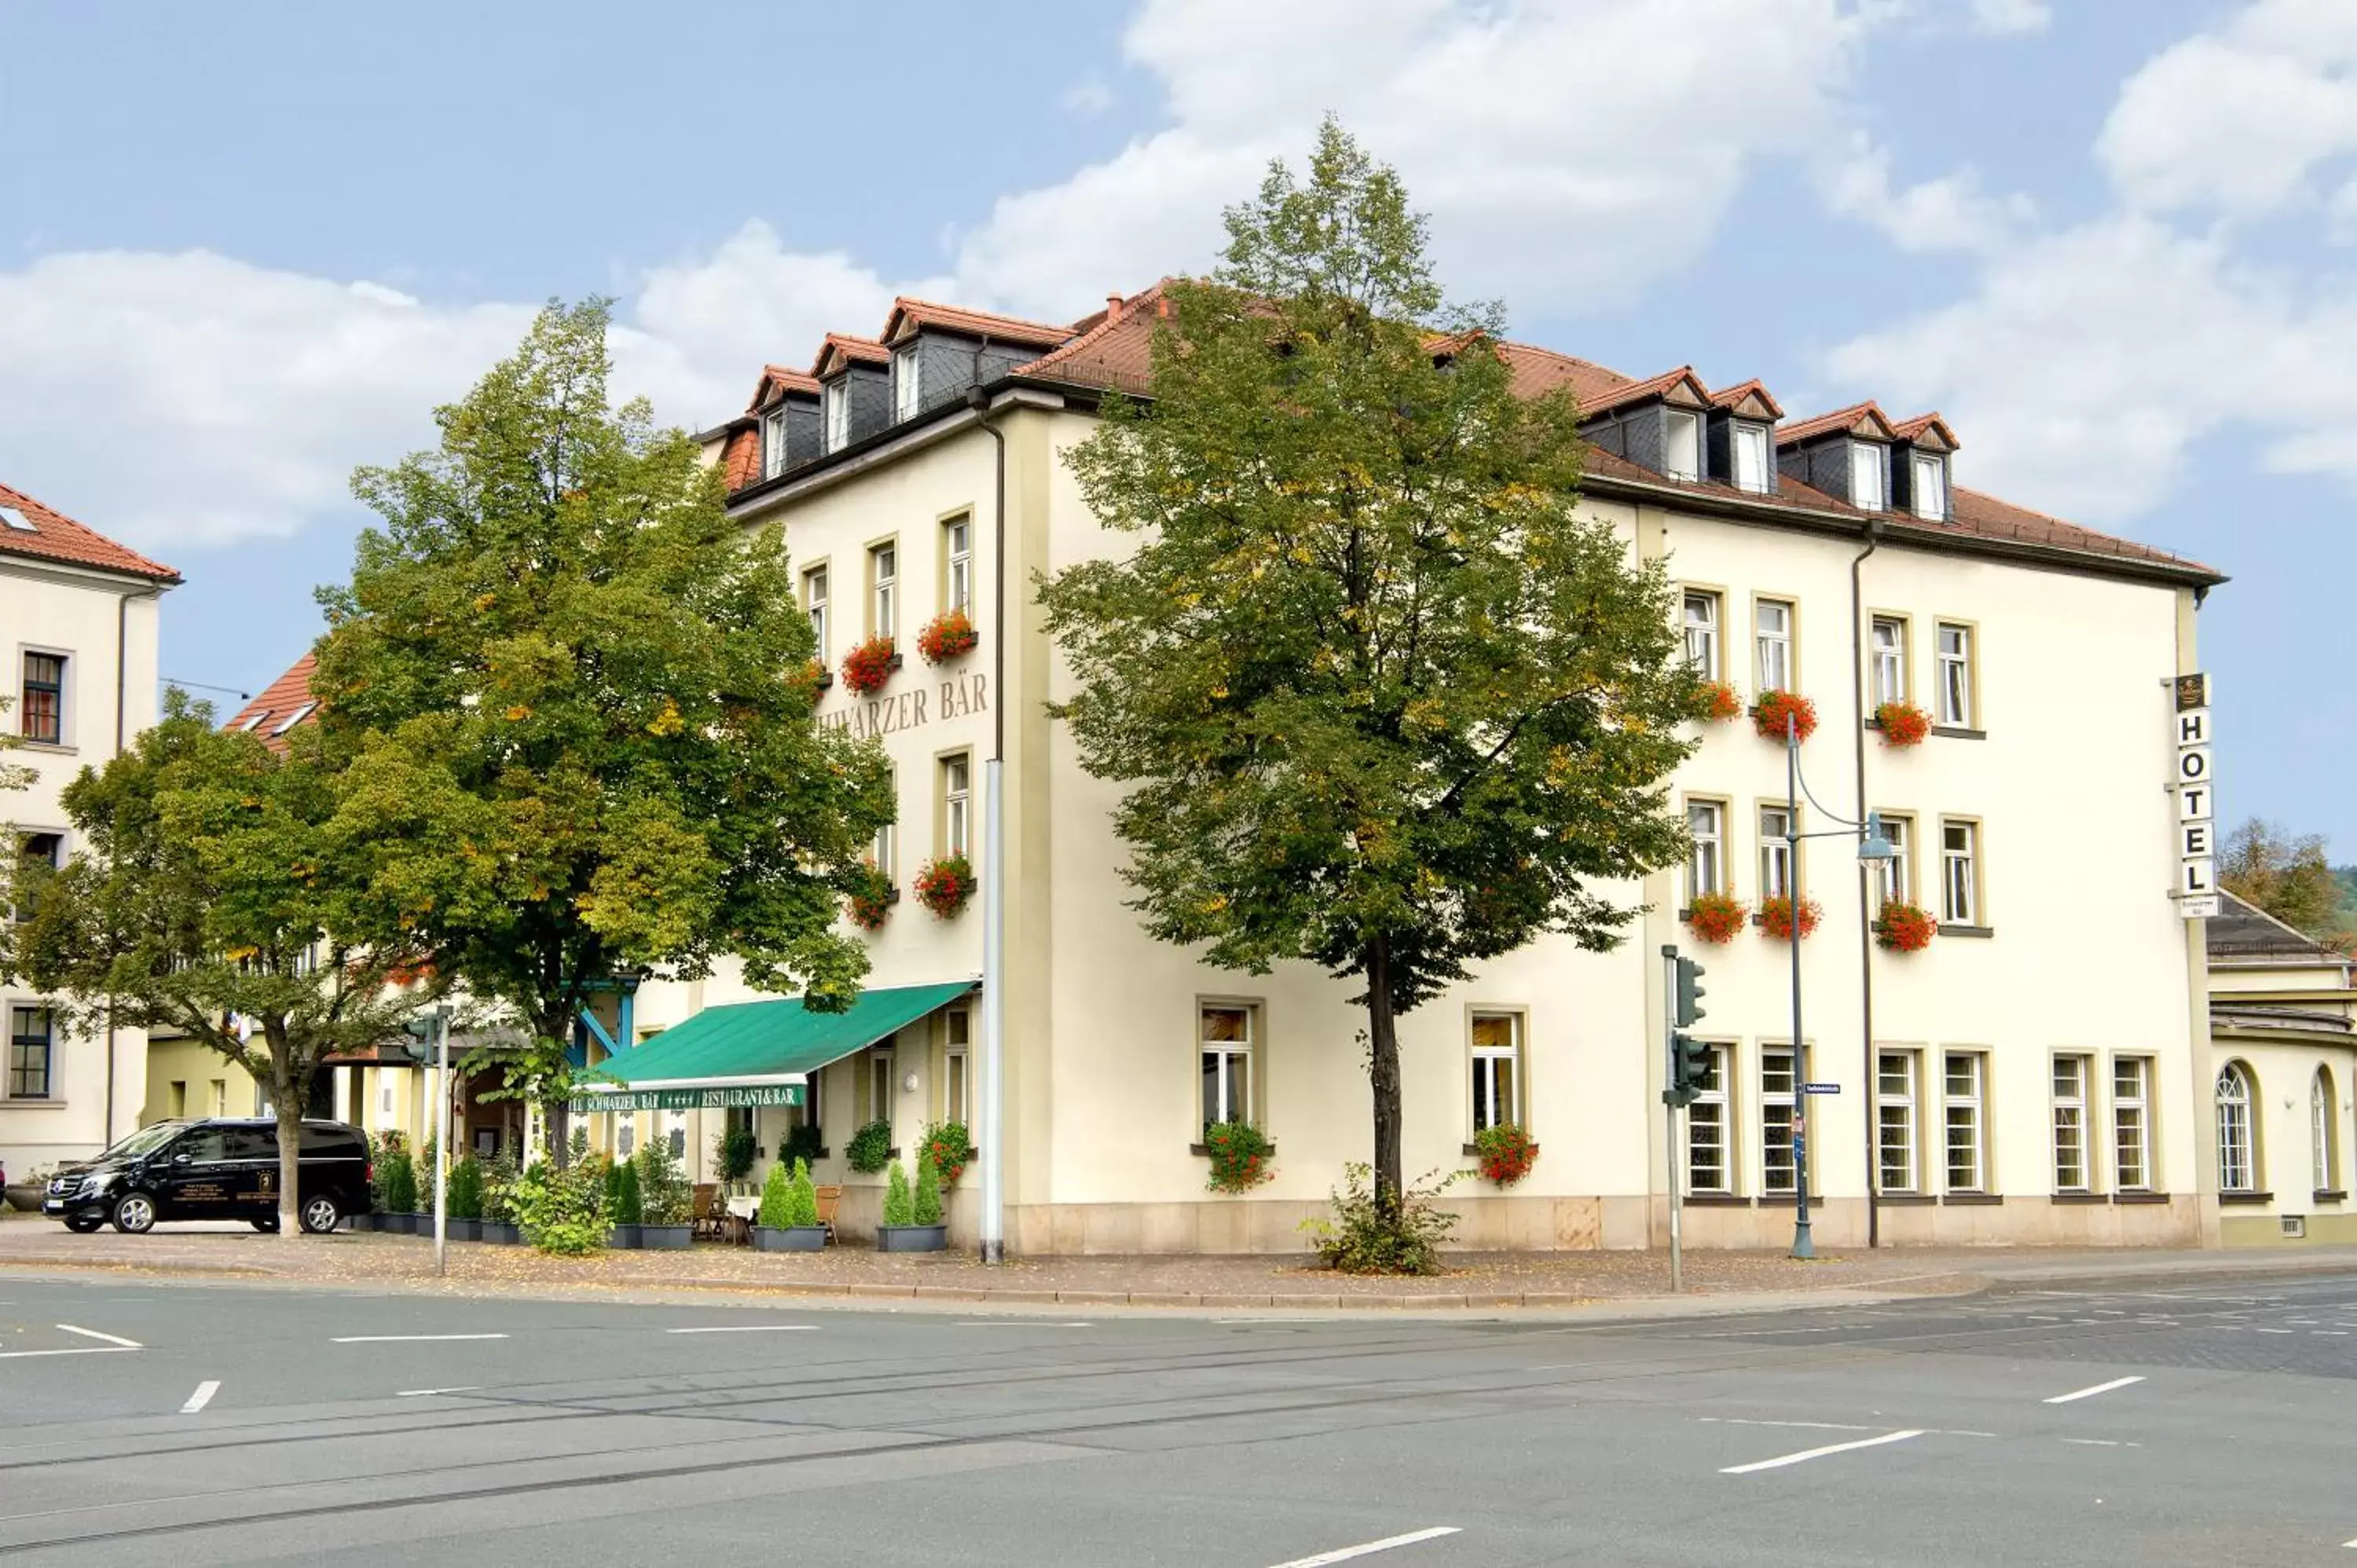 Facade/entrance, Property Building in Schwarzer Bär Jena